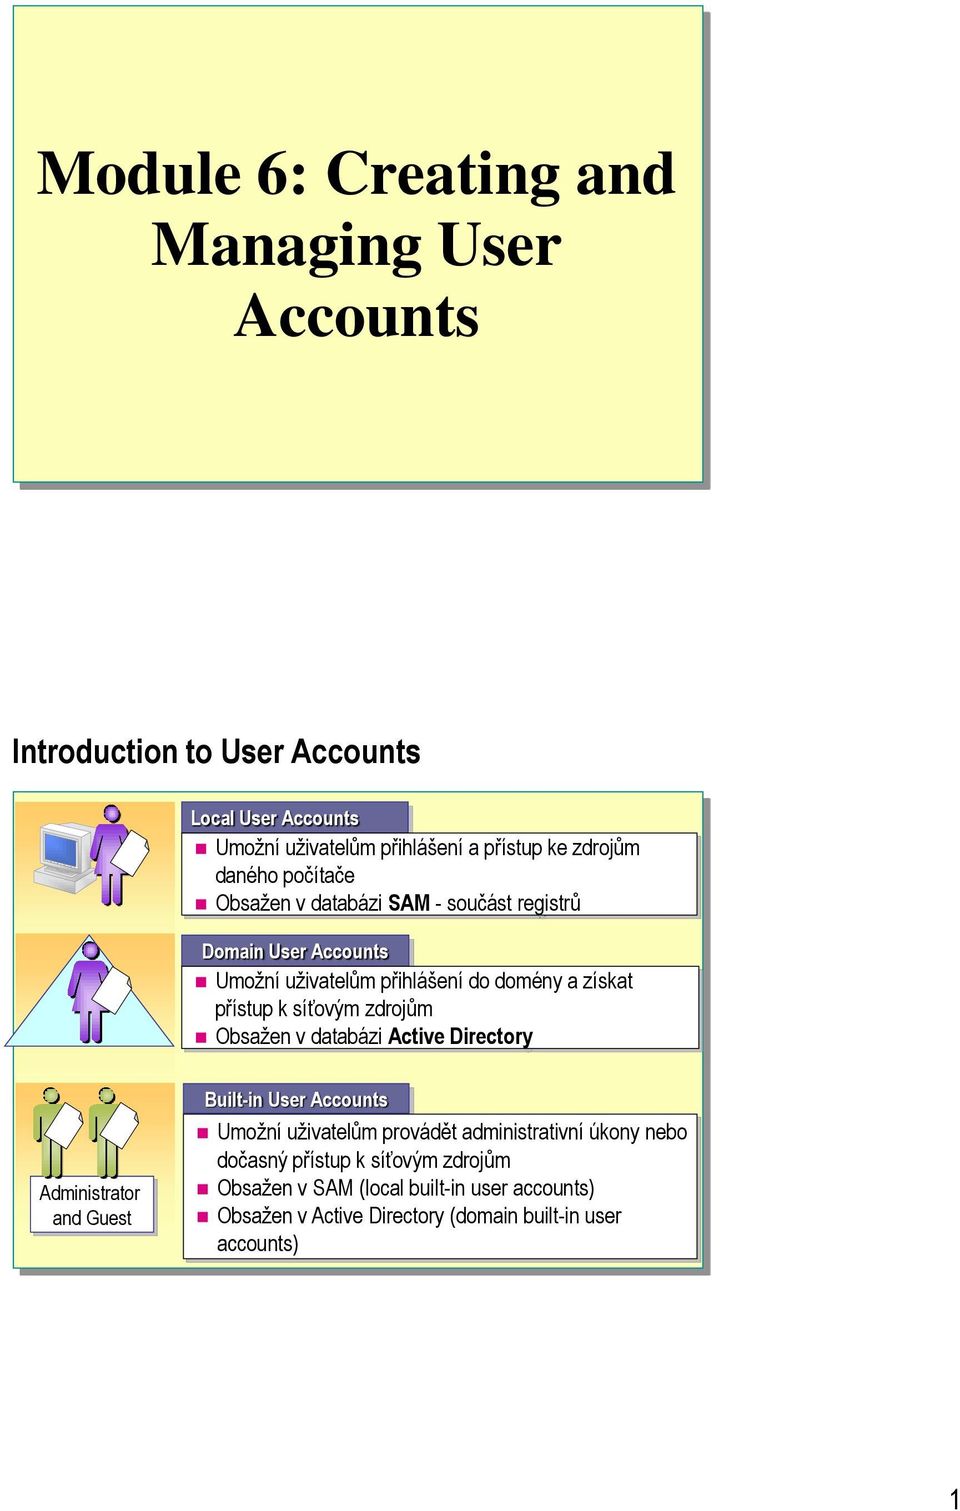 zdrojům Obsažen v databázi Active Directory Administrator and Guest Built-in Accounts Umožní uživatelům provádět administrativní úkony